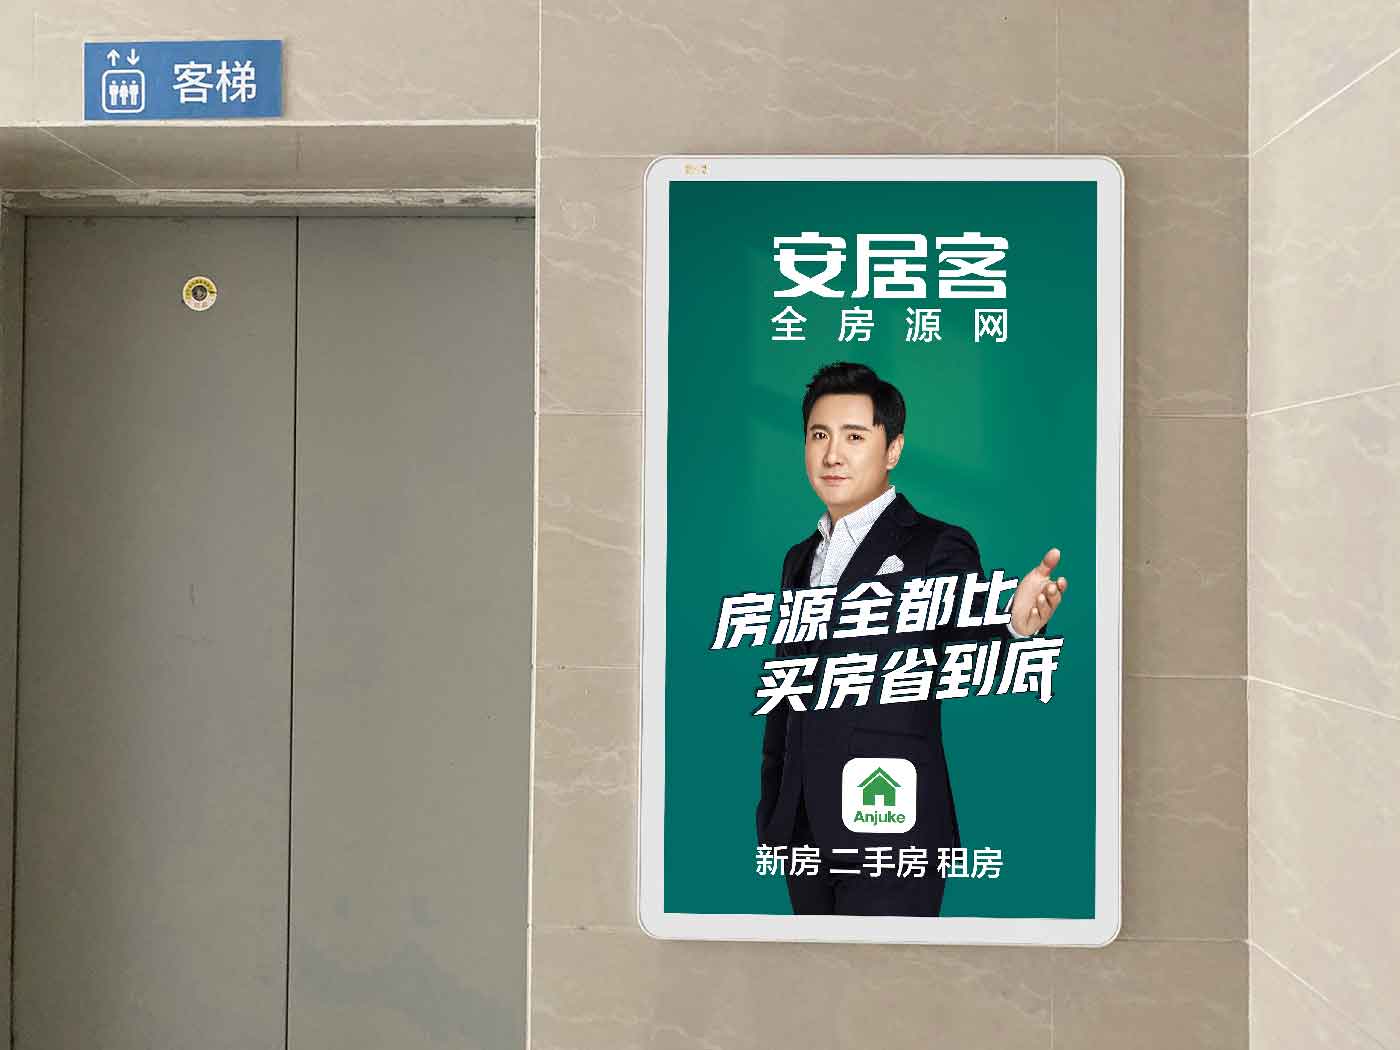 上海电梯广告公司 道闸社区广告招商怎么找客户